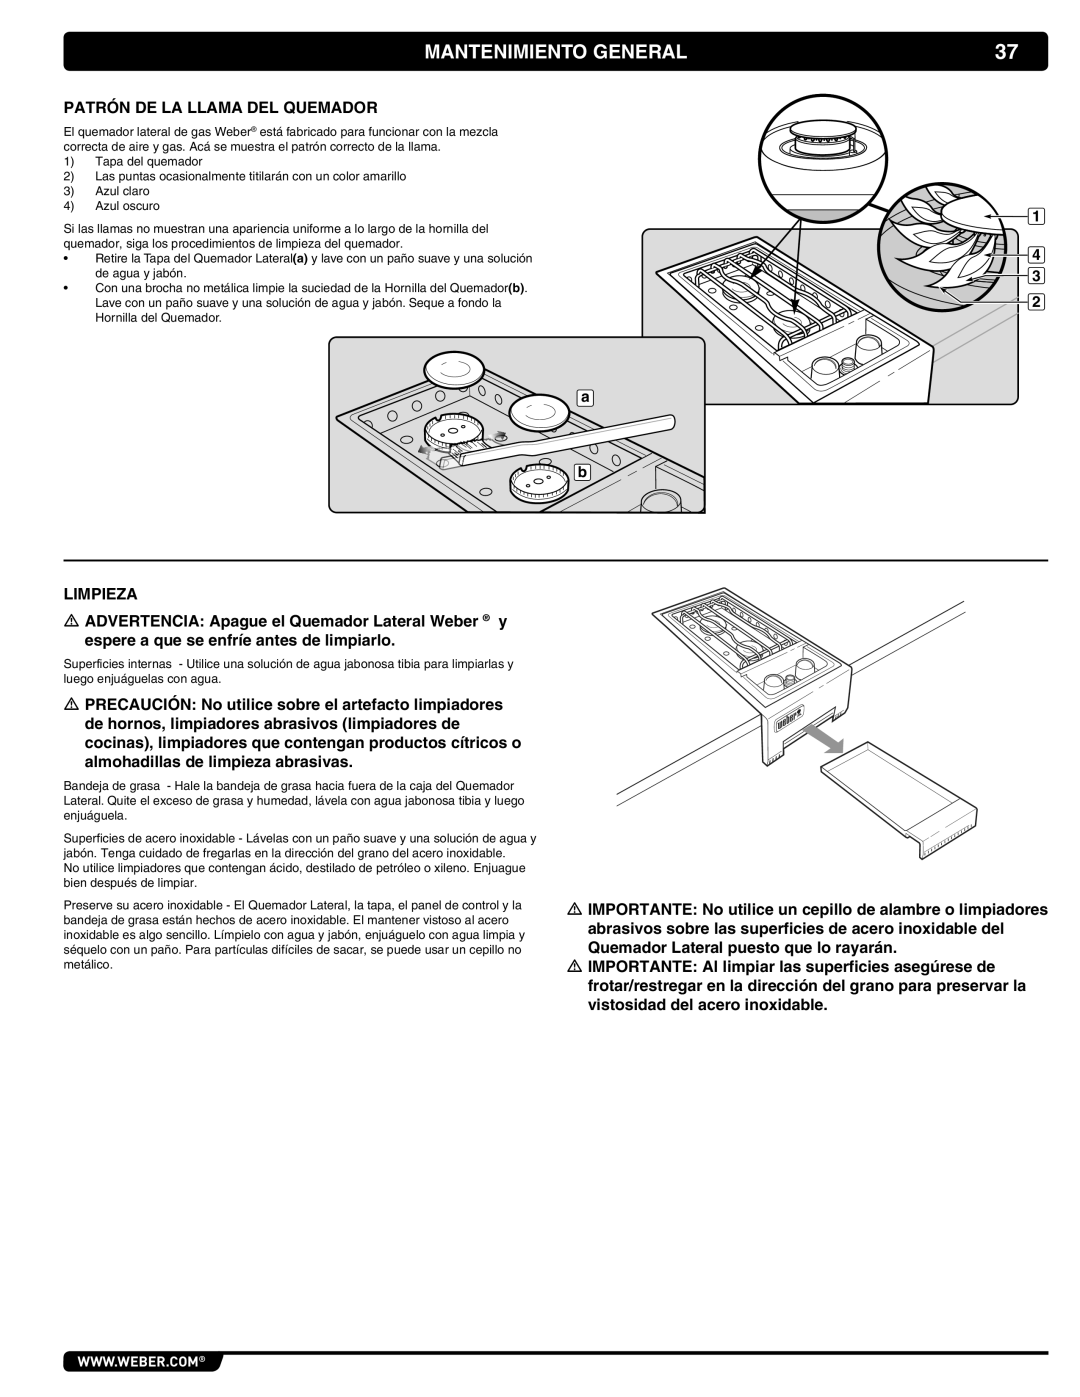 Weber 56069 manual Mantenimiento General, Tapa del quemador 